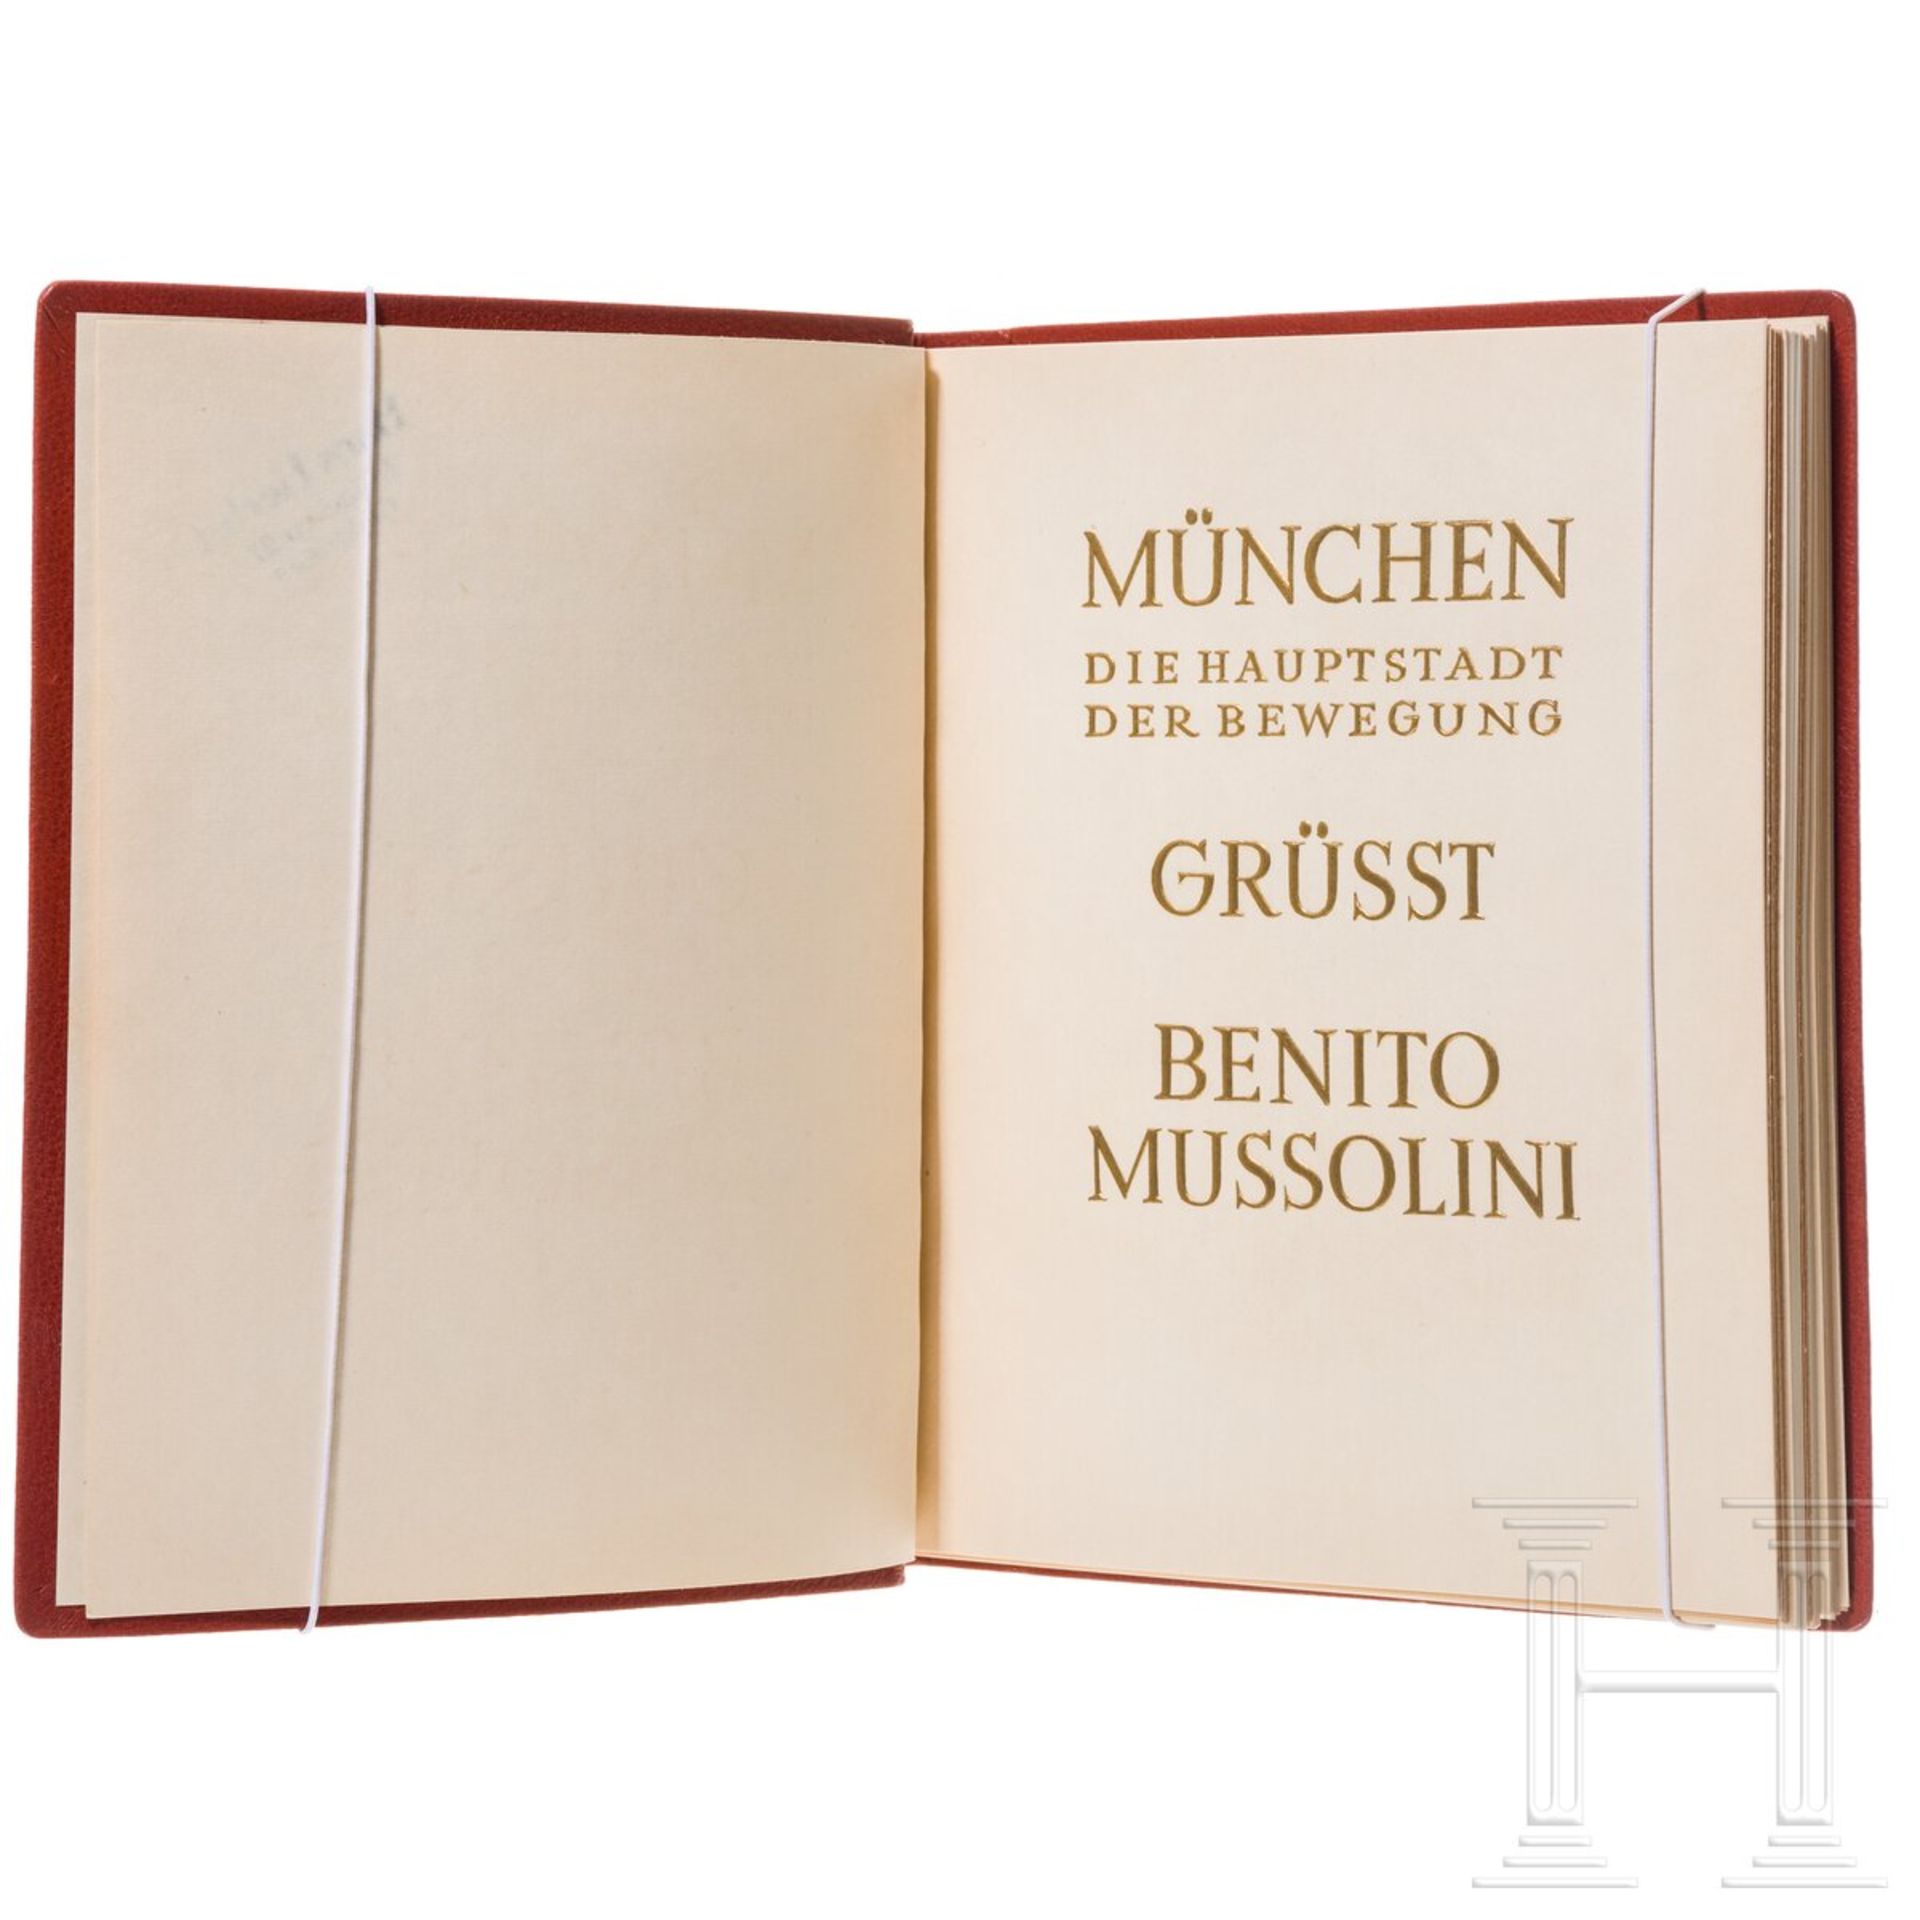 Geschenkbildband anlässlich Mussolinis Besuch 1937 in München - Bild 2 aus 11